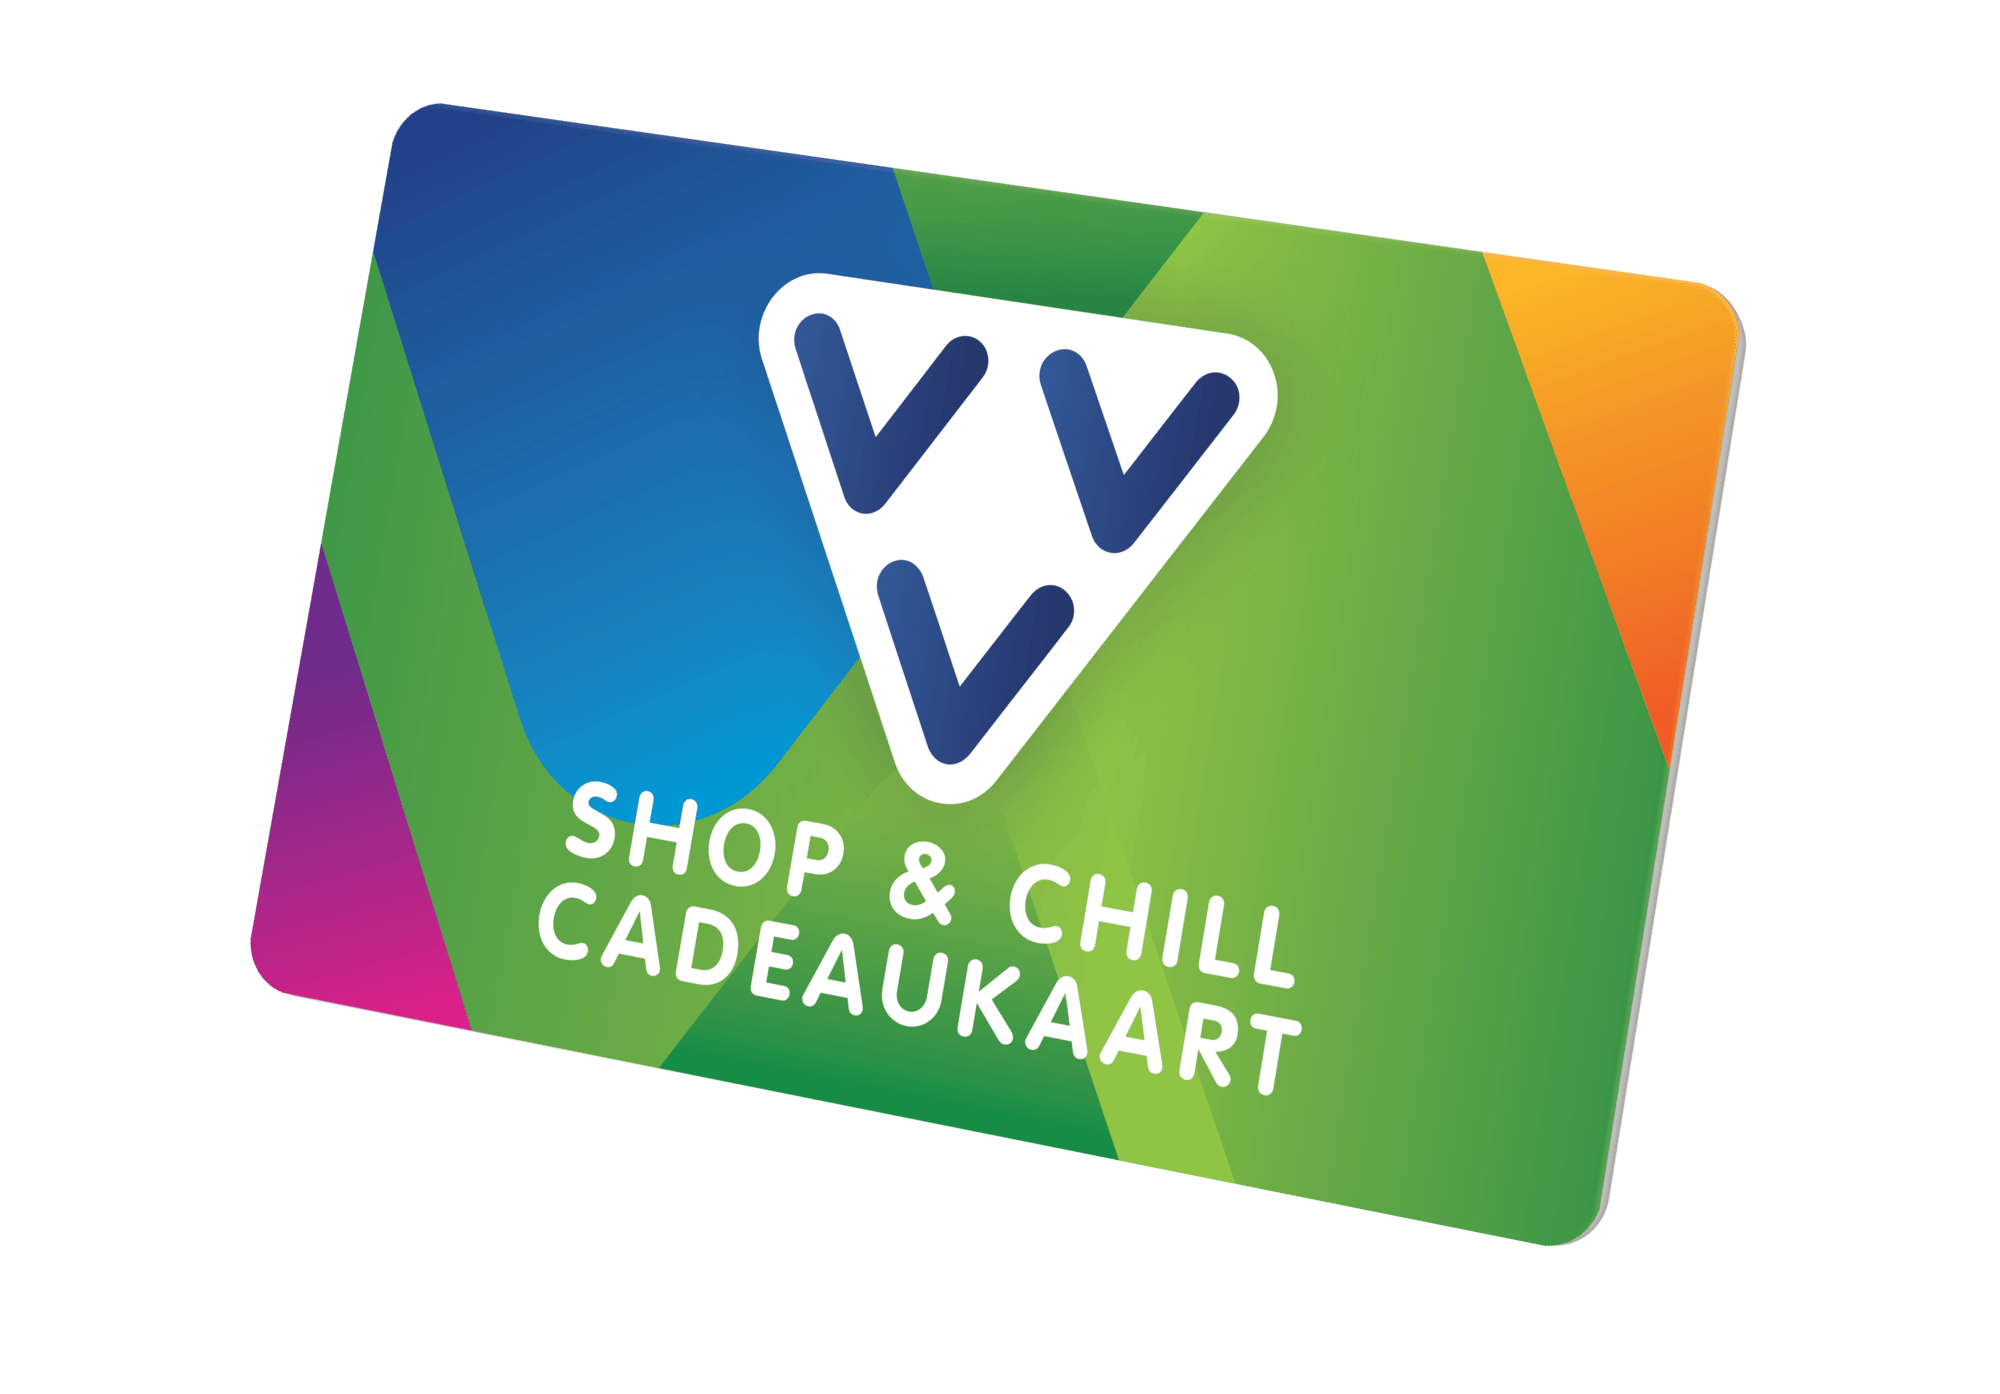 VVV Shop & Chill Cadeaukaart kaart